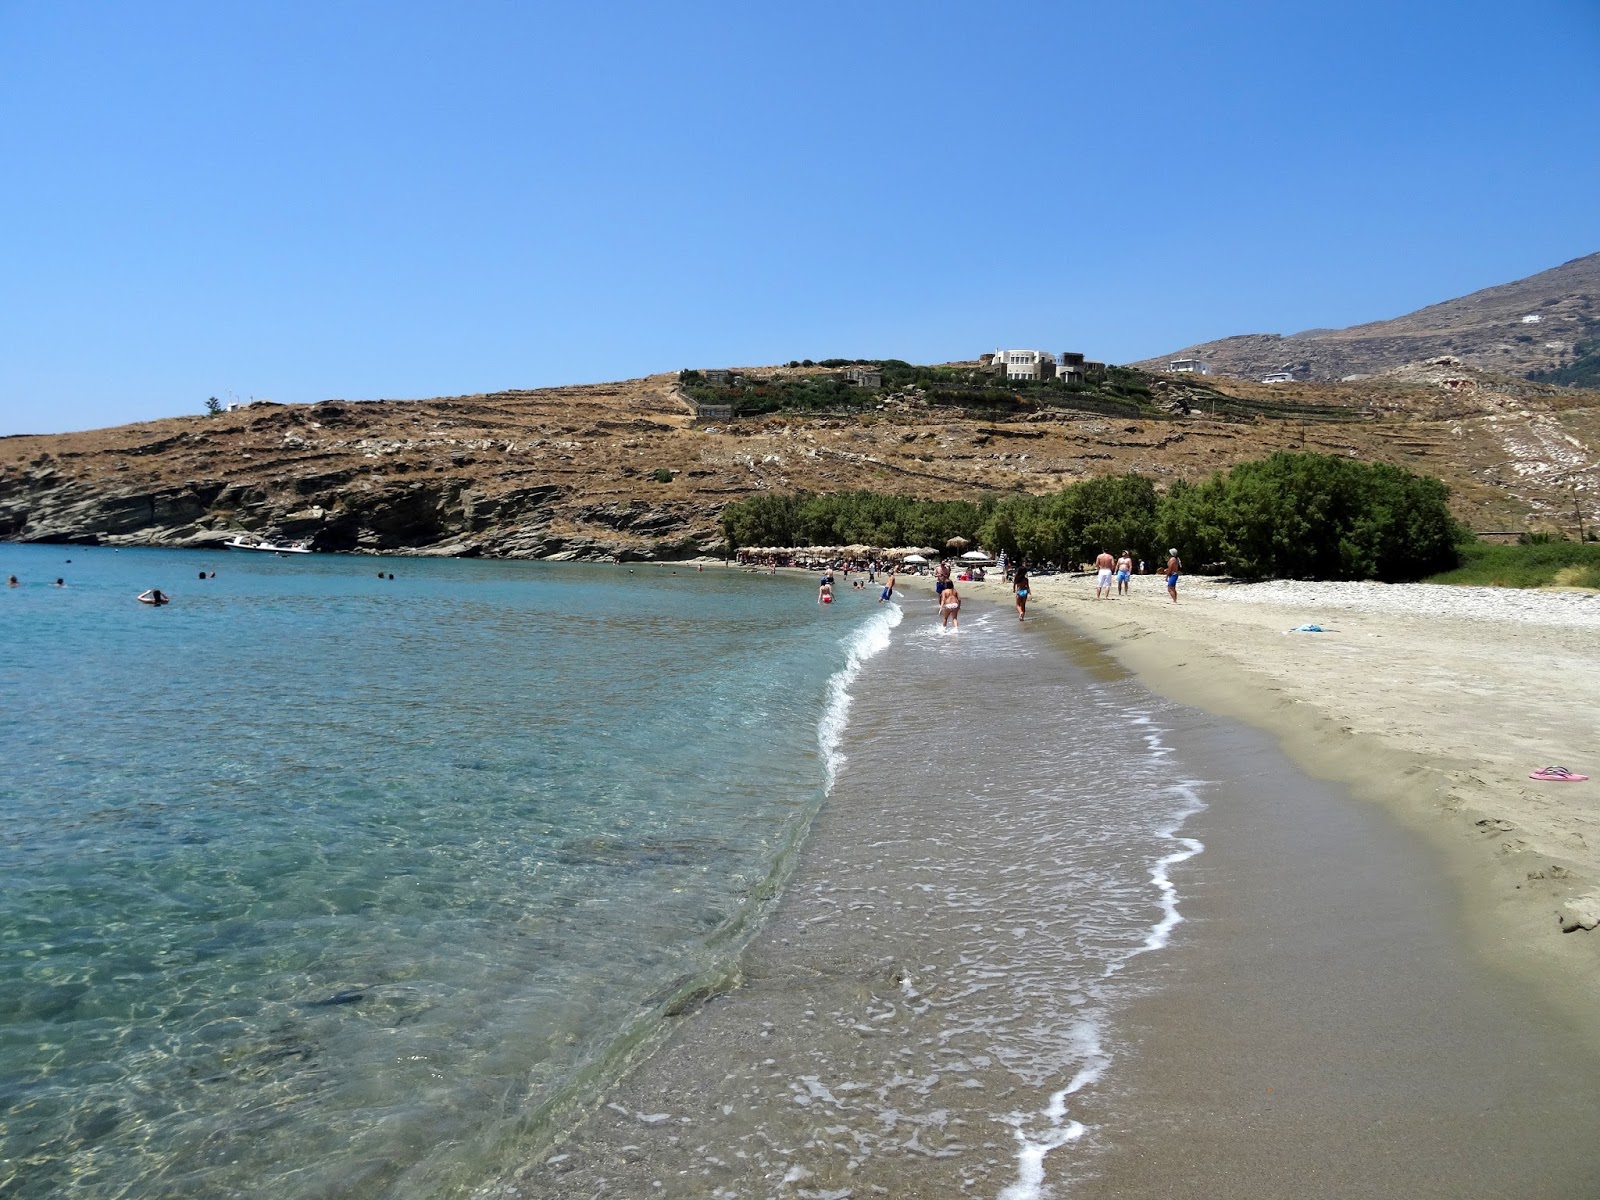 Kalivia, Tinos'in fotoğrafı parlak kum yüzey ile